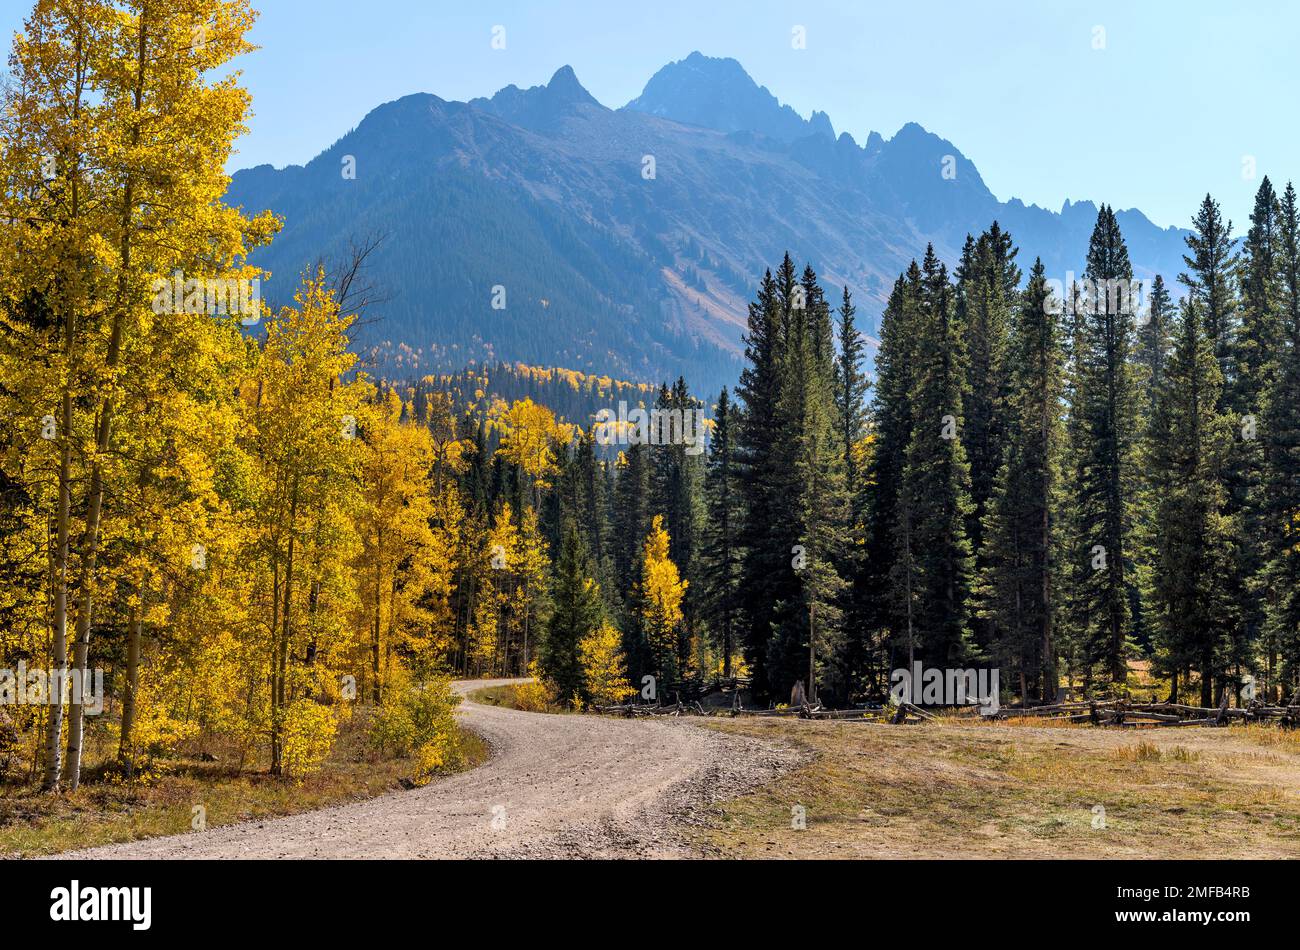 Autumn Mountain Road - Une route de l'arrière-pays qui s'enroule dans une vallée colorée au pied de la chaîne de Sneffels accidentée, dans un après-midi ensoleillé d'octobre. Ridgway, Colorado, États-Unis. Banque D'Images